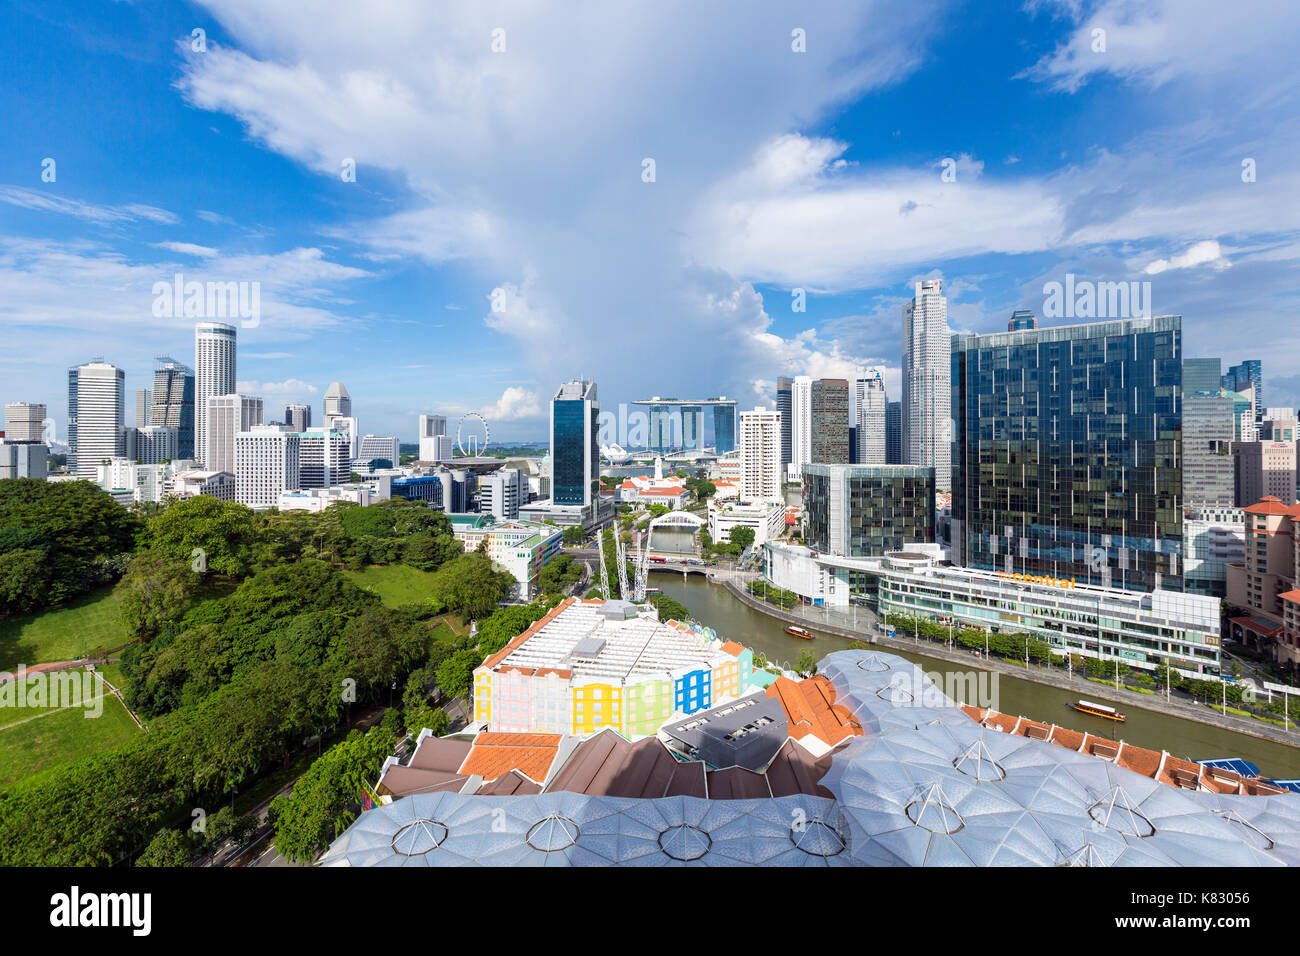 Vista elevada sobre el horizonte de la ciudad y restaurantes junto al río en el distrito de entretenimientos de Clarke Quay, Singapur, Sudeste de Asia Foto de stock